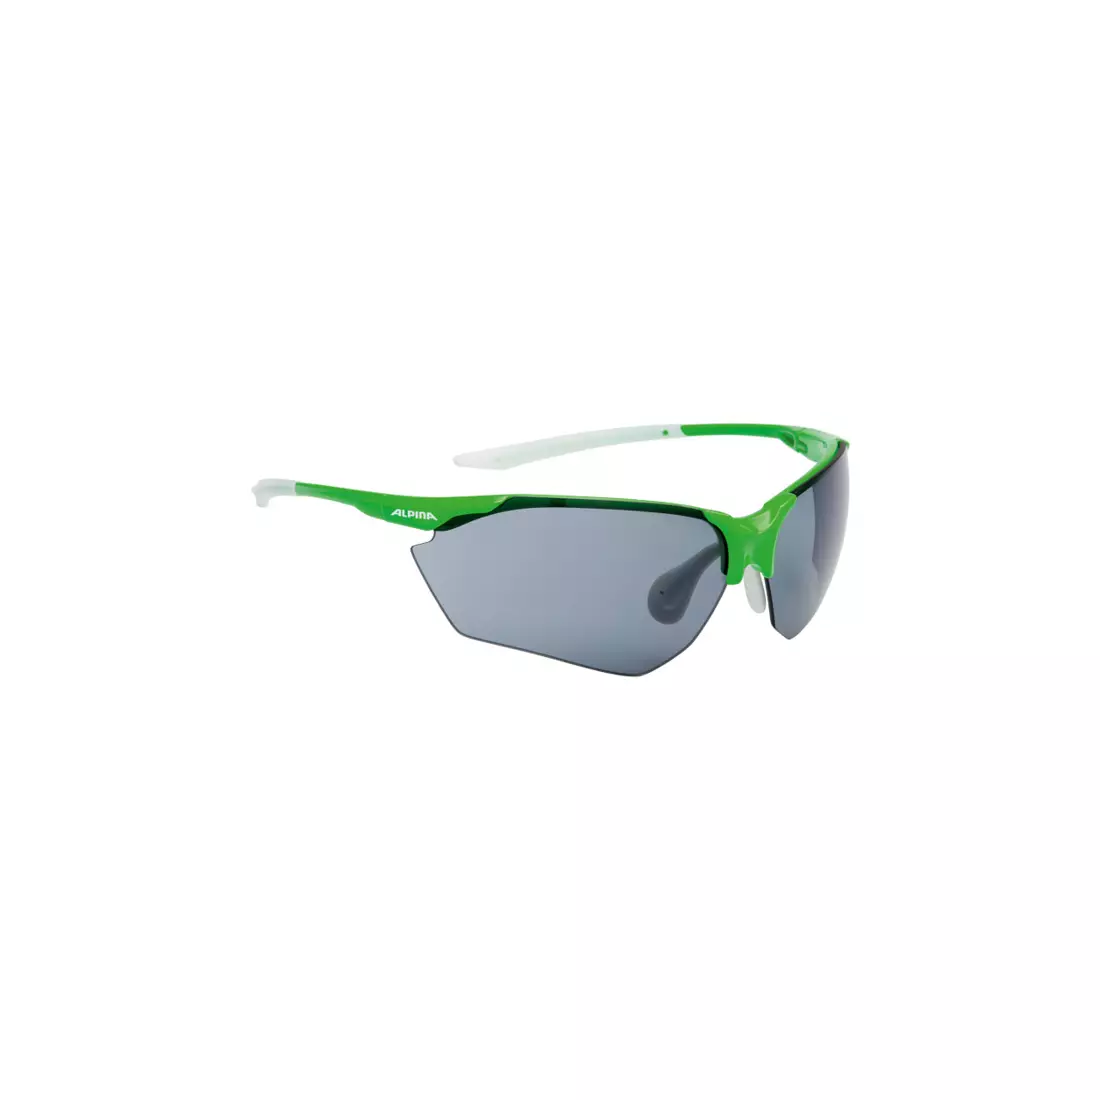 ALPINA - SPLINTER HR C+ sportszemüveg zöld-fehér / fekete fogstop üveg